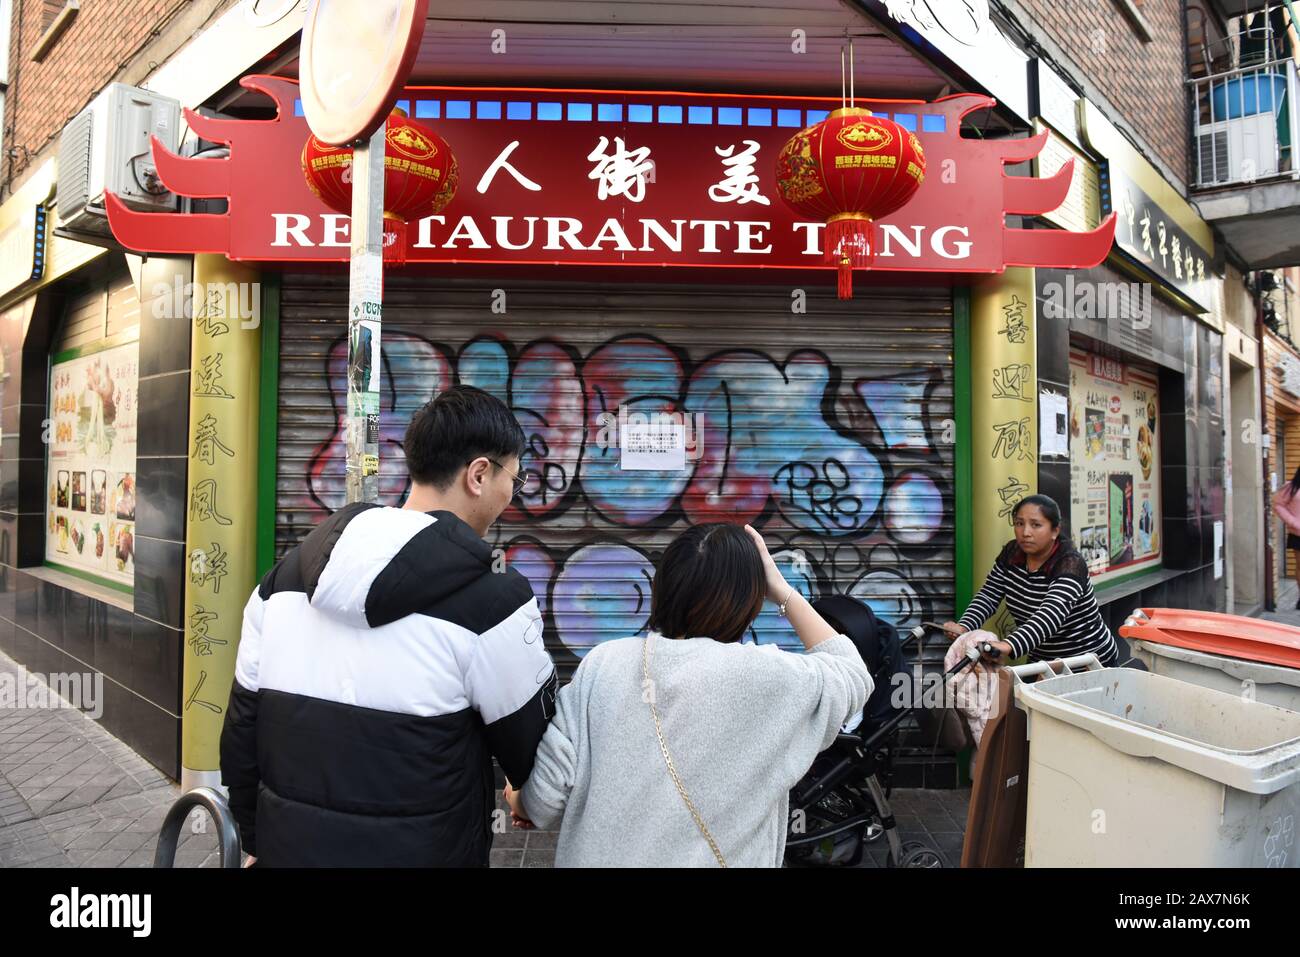 Un restaurante chino se ve cerrado en el distrito de Usera.Después del  brote de Coronavirus en China, los residentes chinos en el distrito de Usera  en Madrid han cerrado cientos de tiendas,